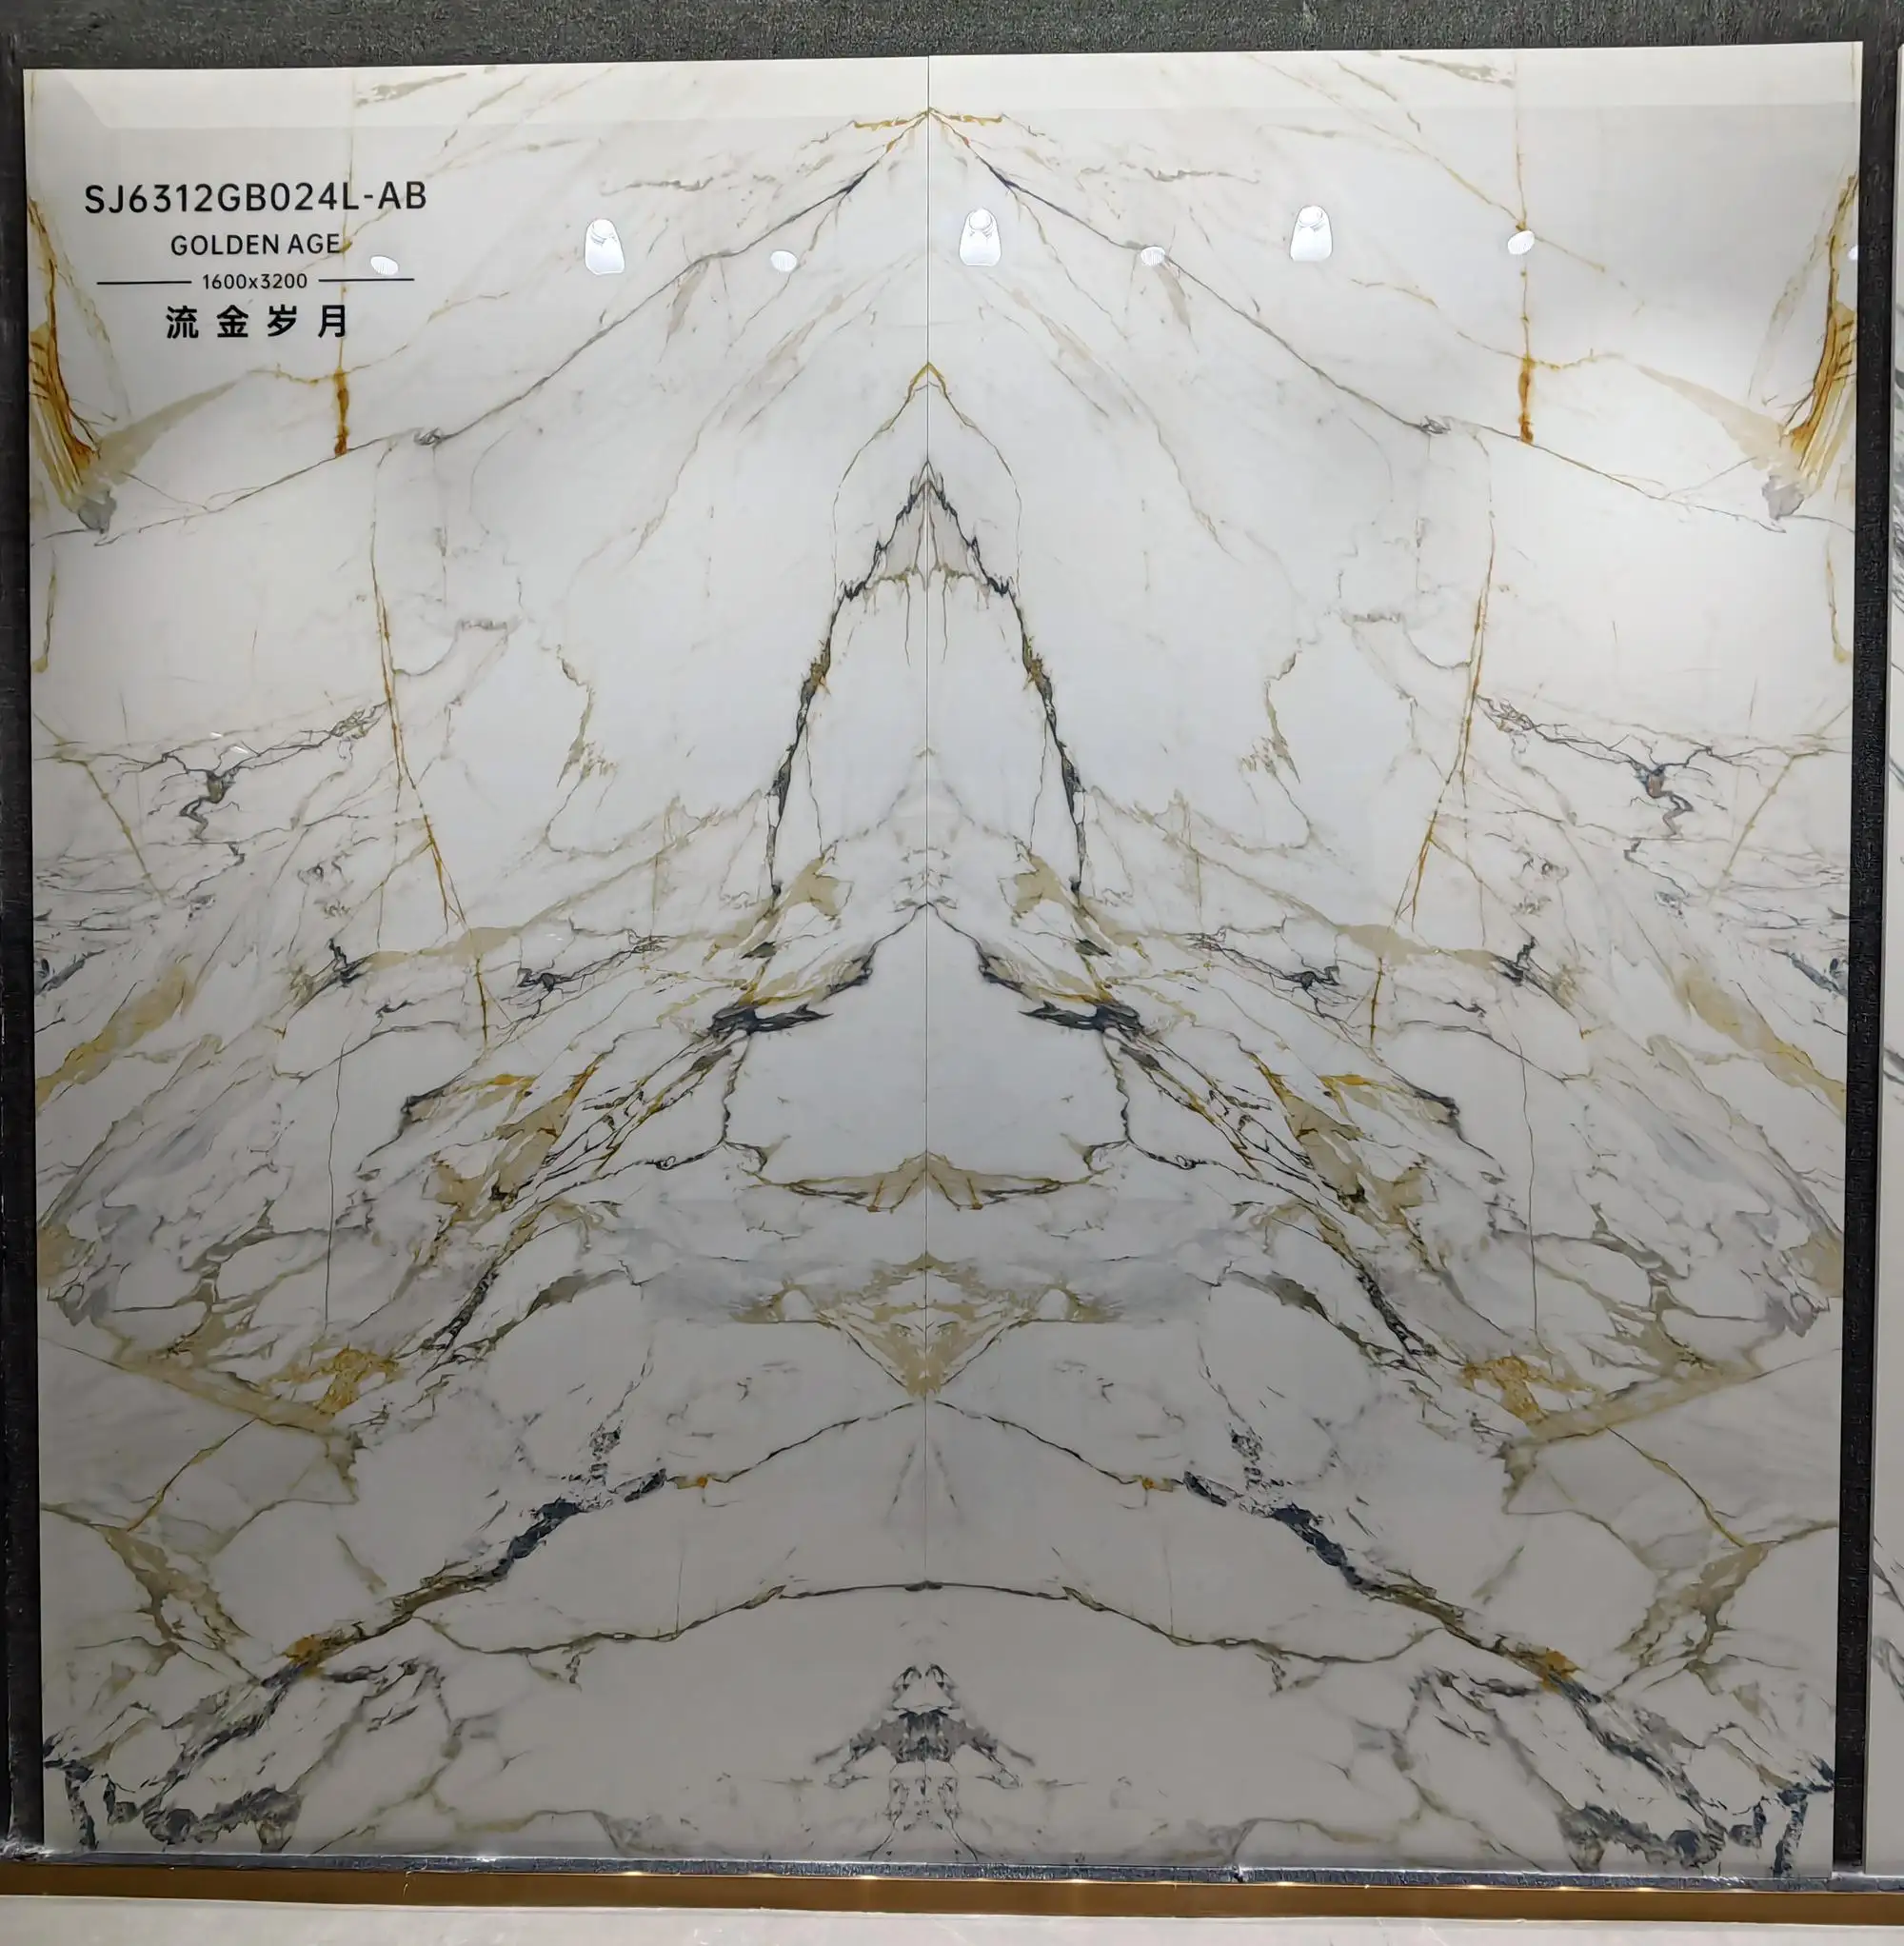 Campione gratuito di piastrelle in gres porcellanato lucido lucido 60x120 motivo oro bianco marmo sinterizzato in pietra stile porcellana